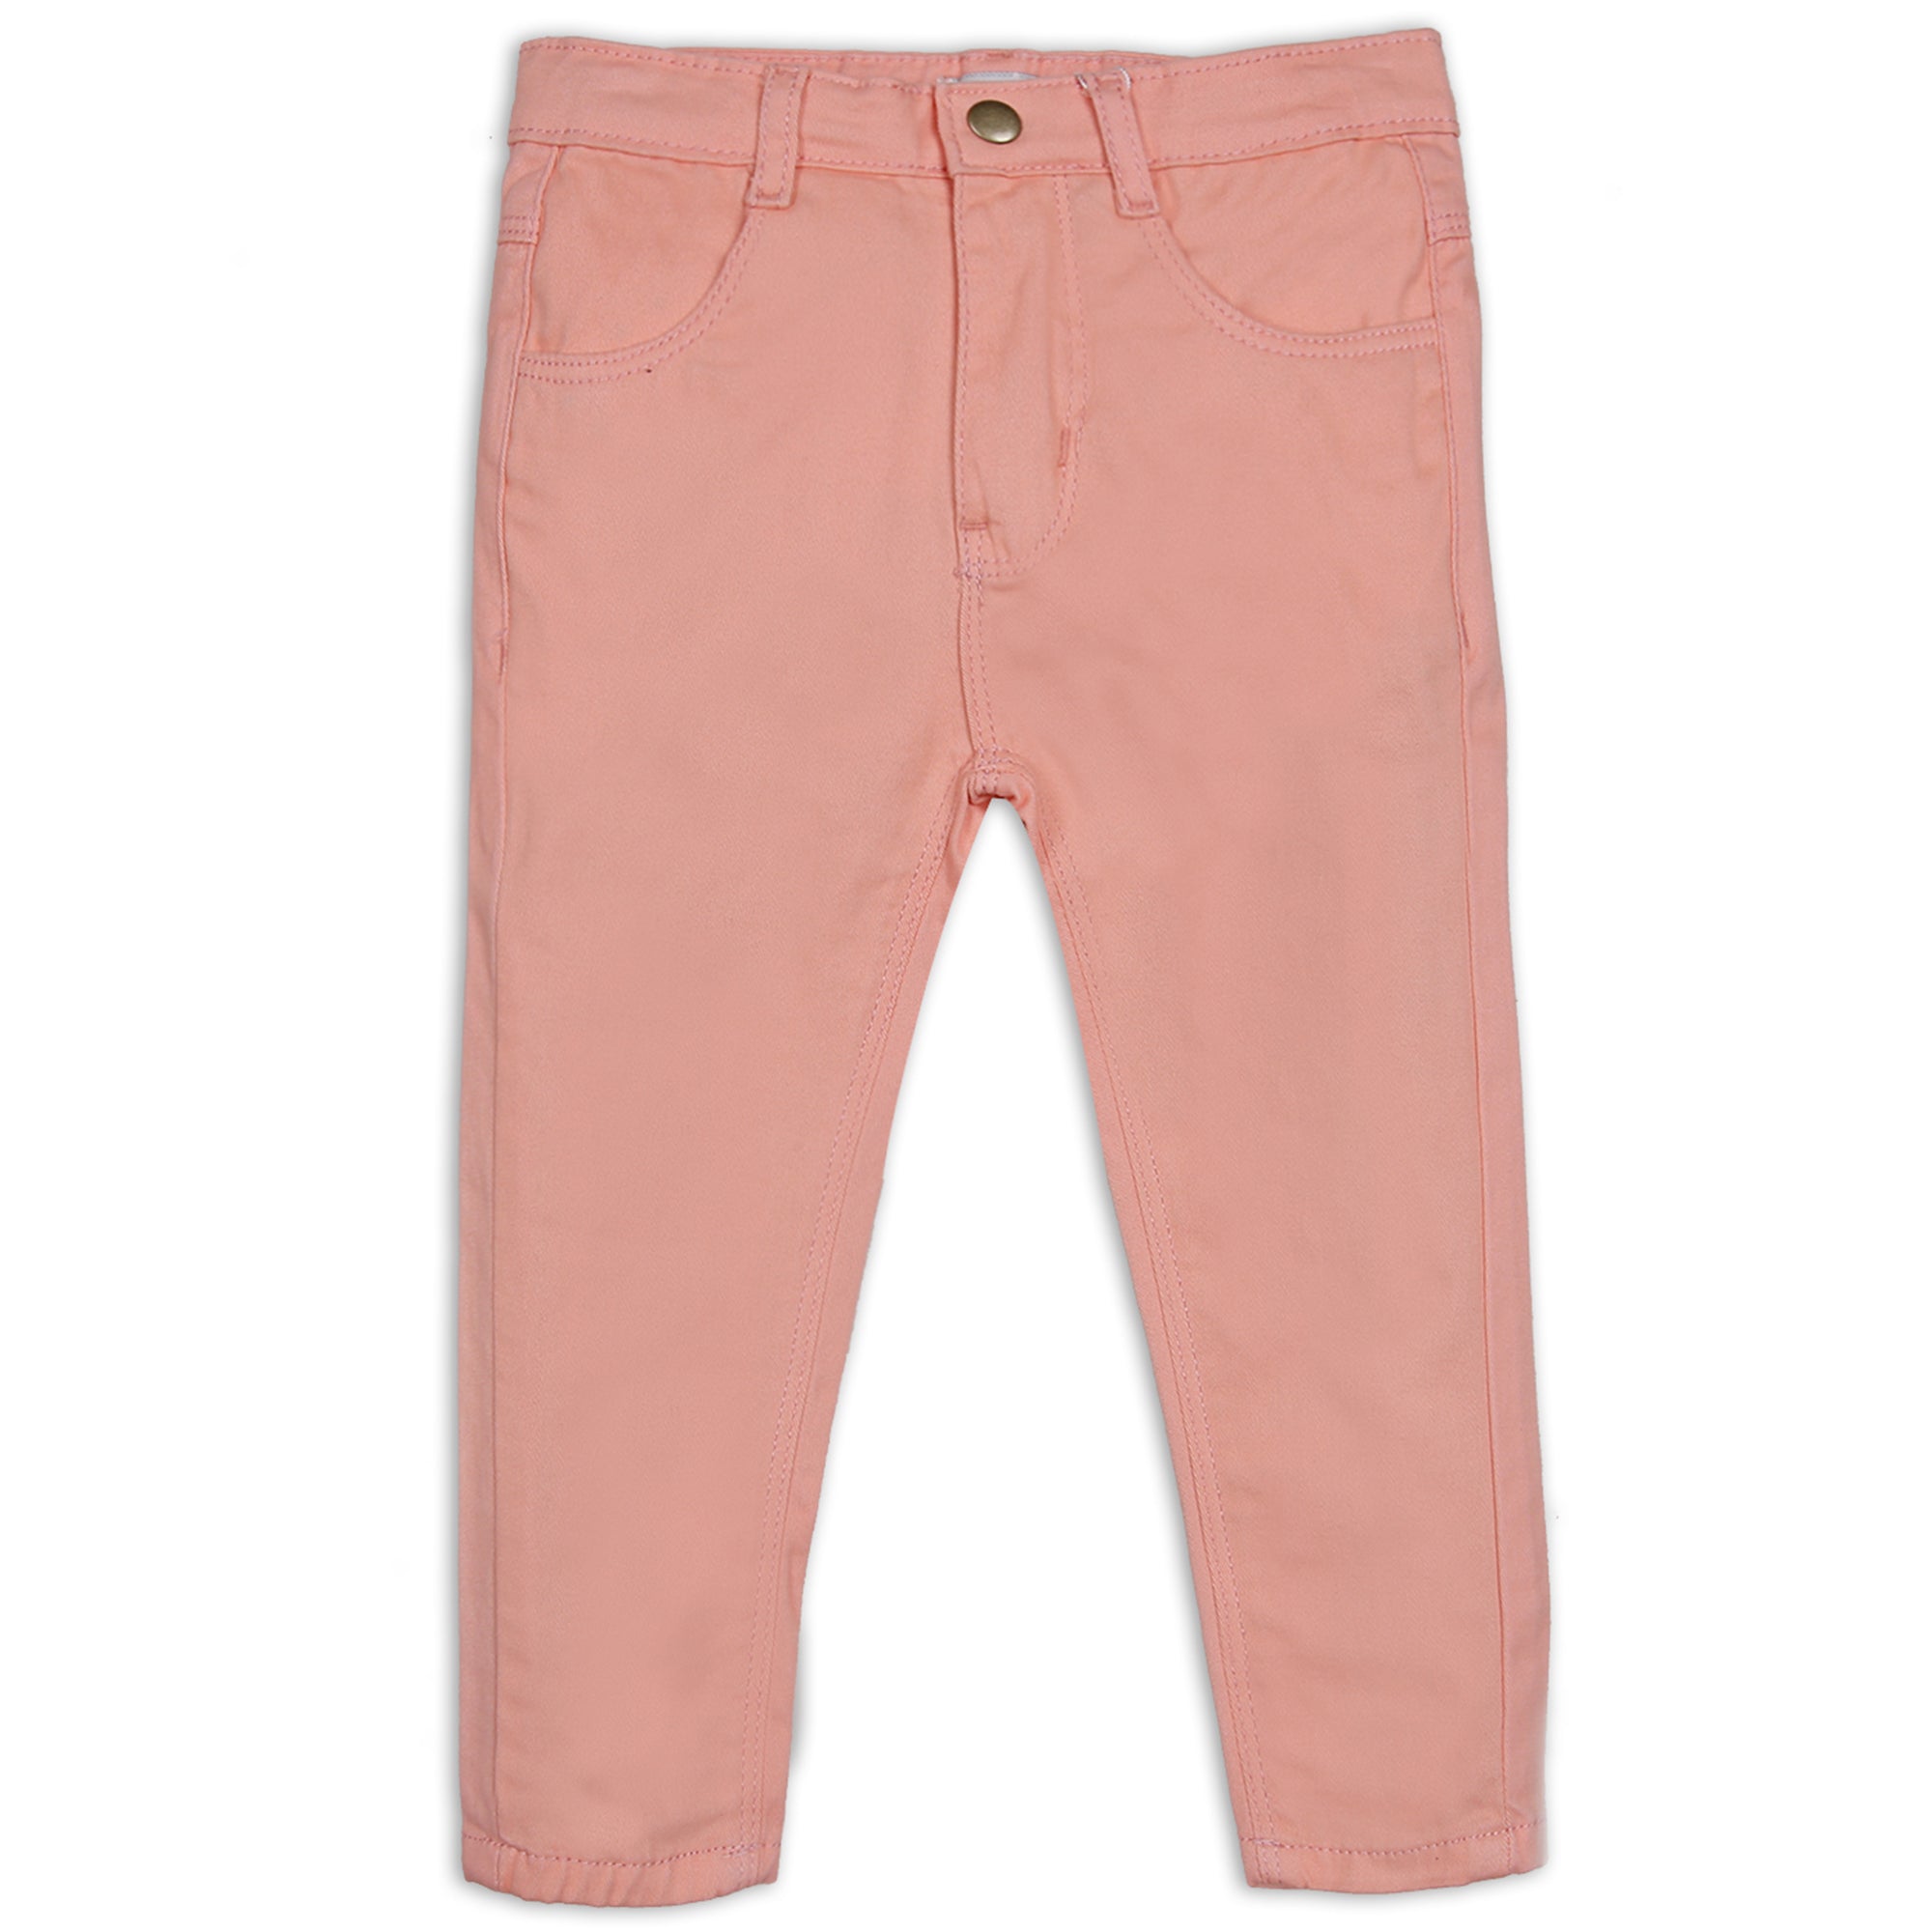 Salmon Pink Pants